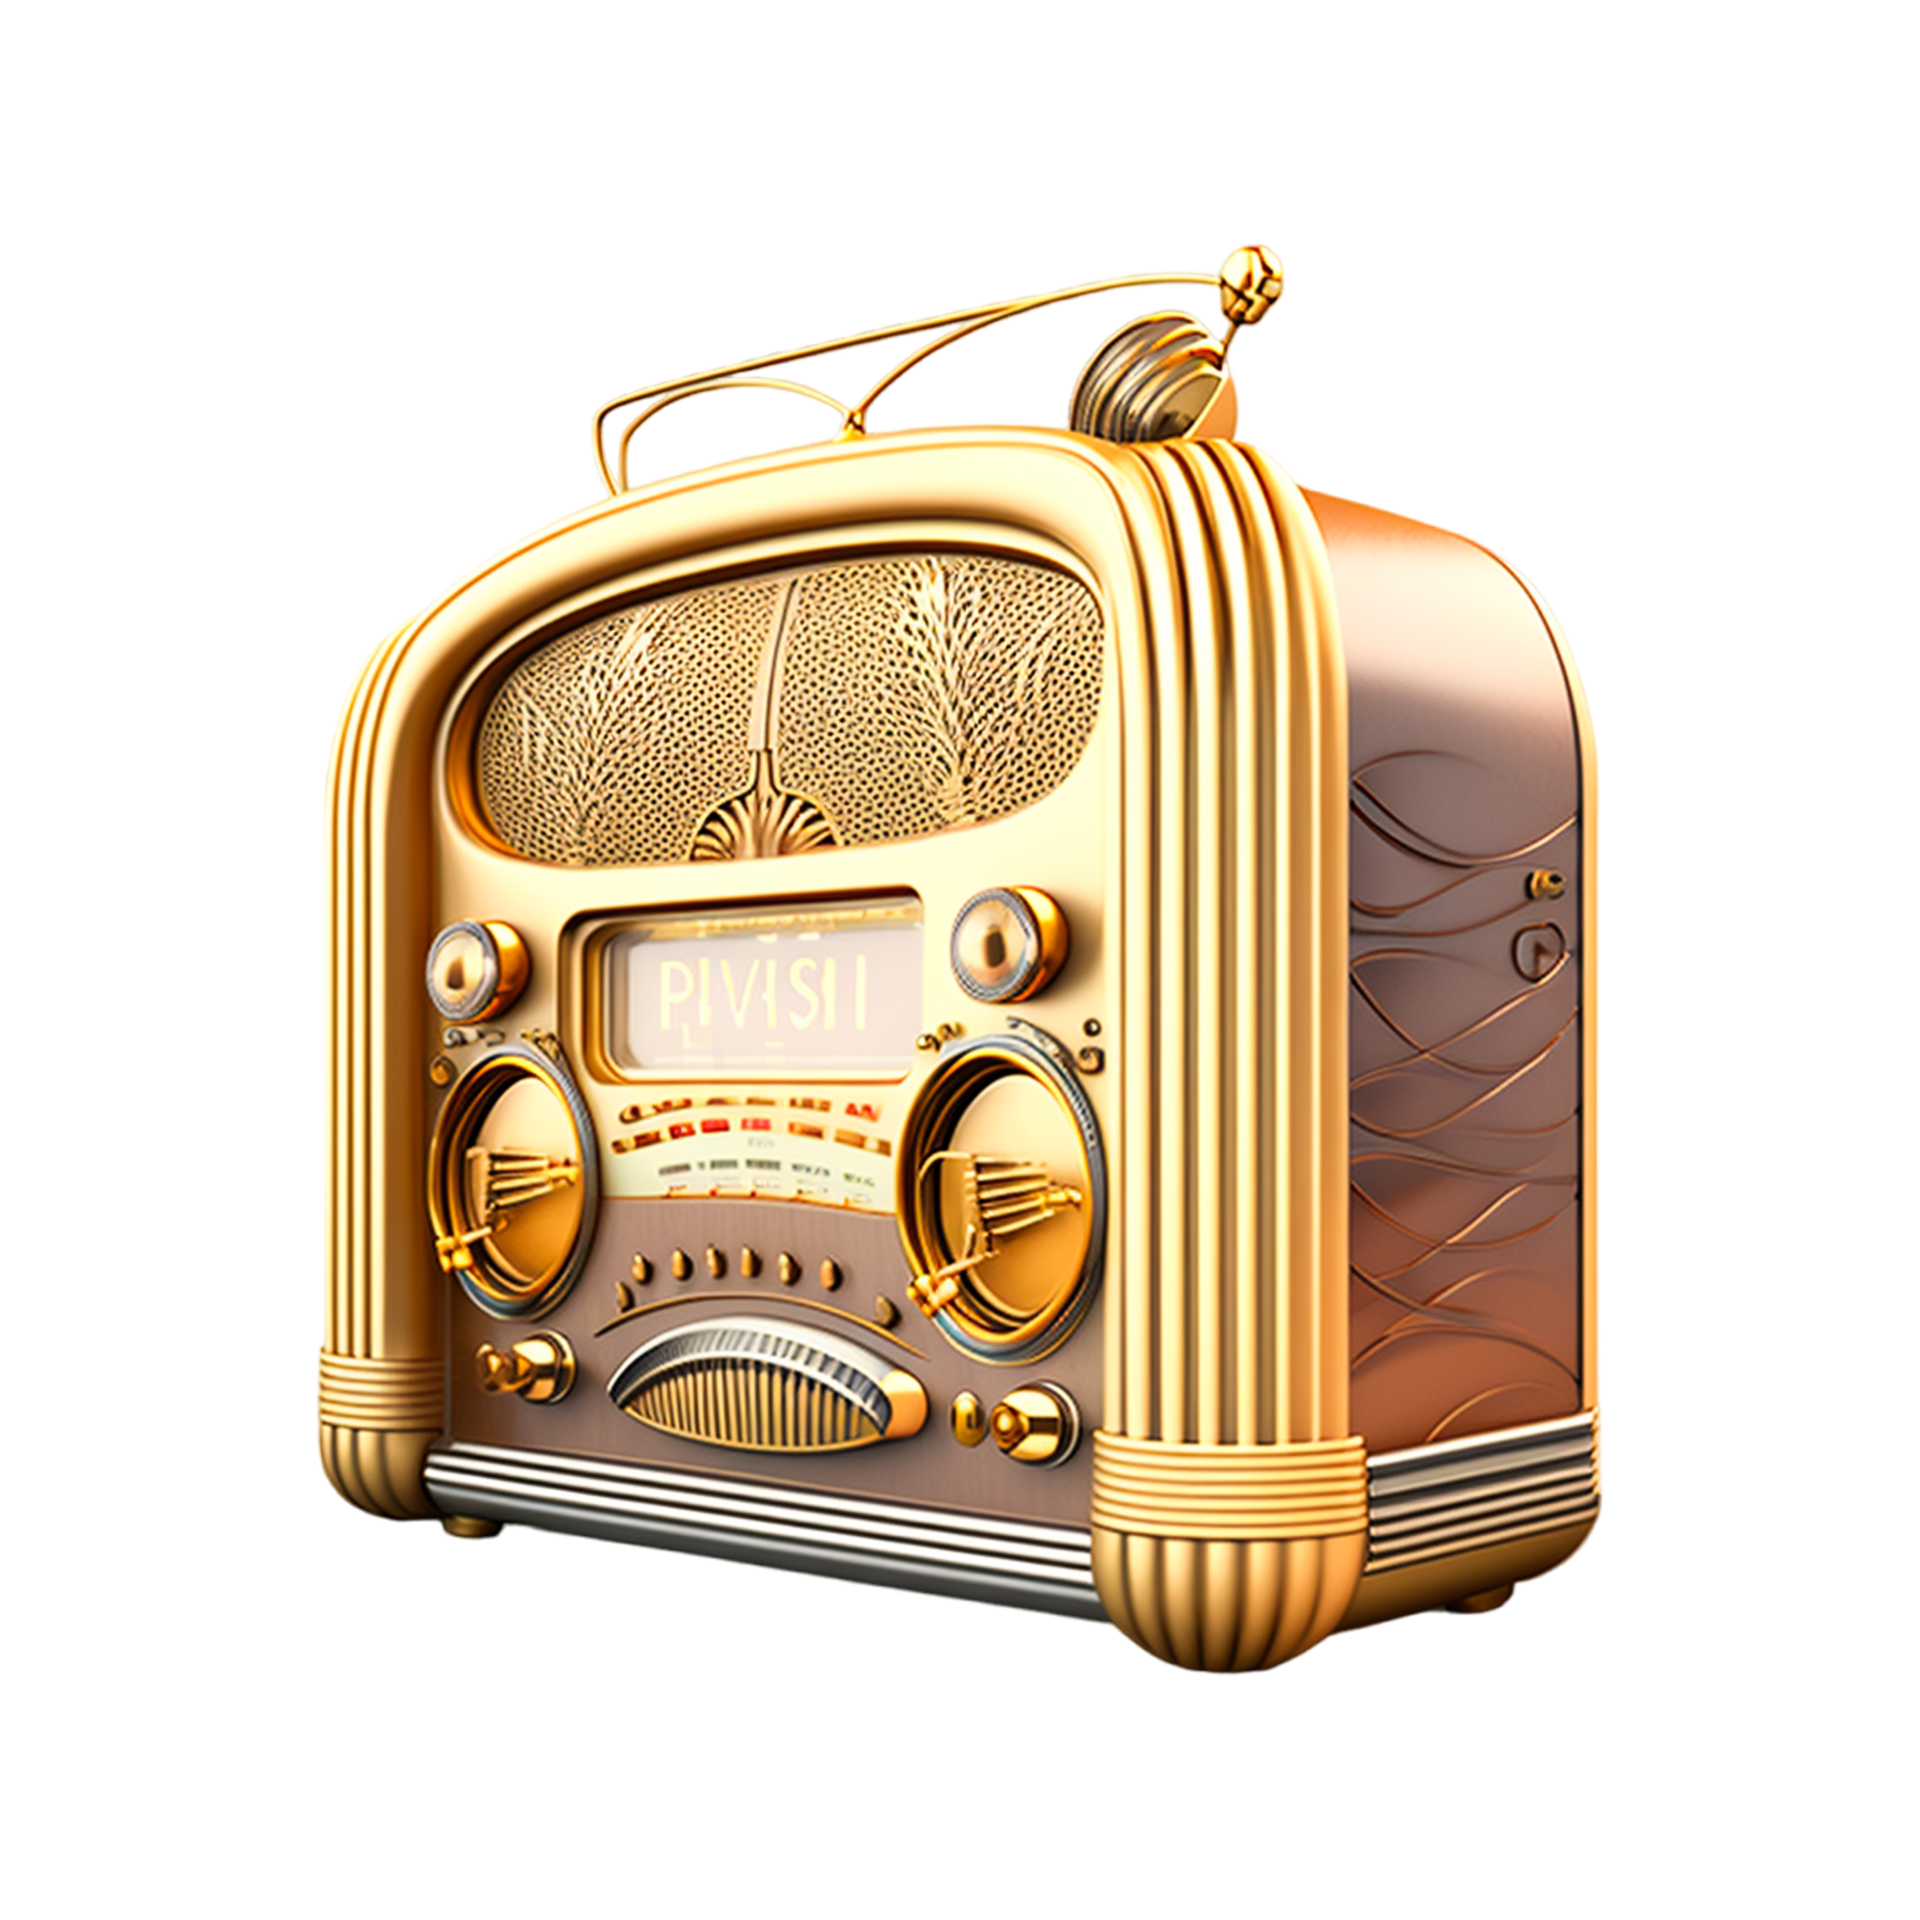 Αφιέρωμα στην χρυσή εποχή του ραδιοφώνου από τον Real FM 97,8